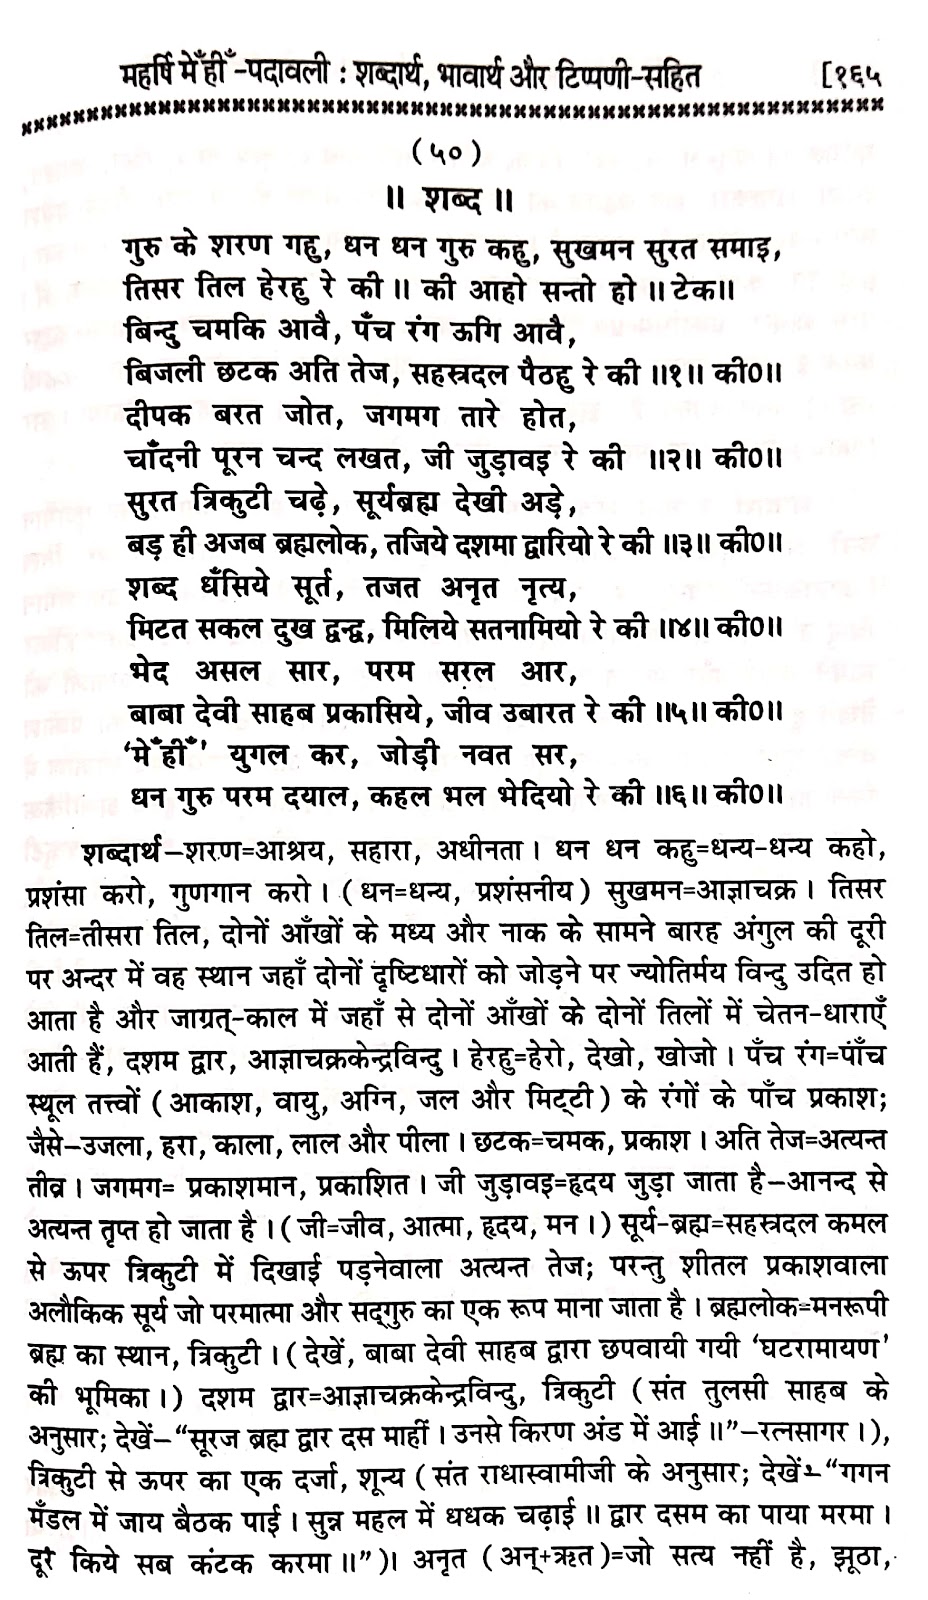 P50, Benefits of Being Gurmukhi, "गुरु के शरण गहु, धन धन गुरु कहु,...'' महर्षि मेंहीं पदावली भजन अर्थ सहित। पदावली भजन 50 और शब्दार्थ । गुरुमुखी के लिए।